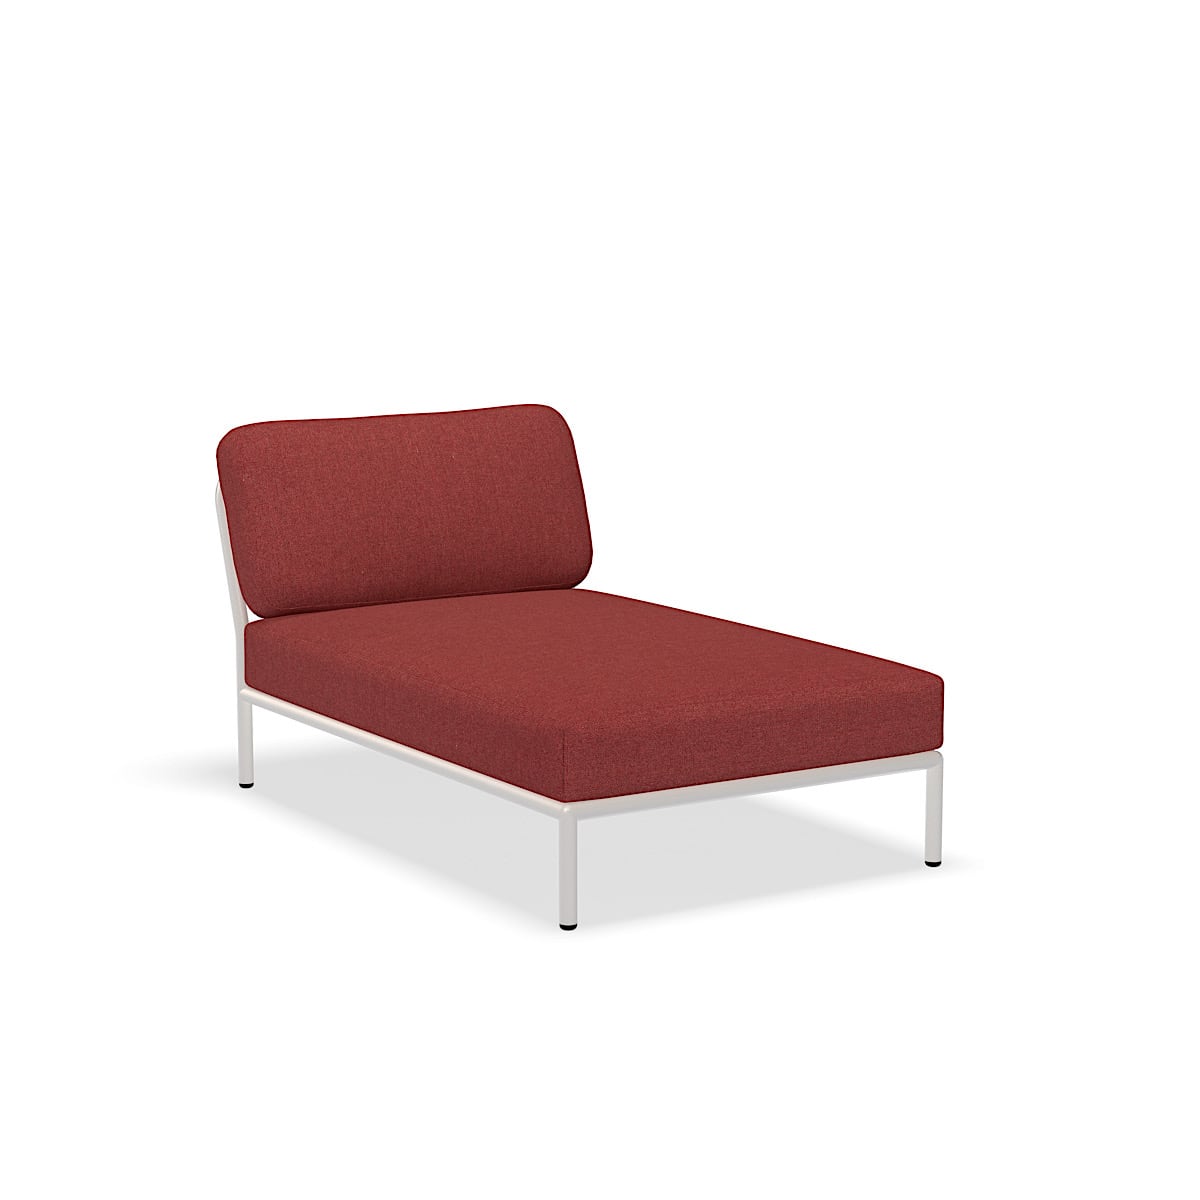 Lounge stol - 12209-1643 - Lounge stol, Scarlet (HERITAGE), hvid struktur